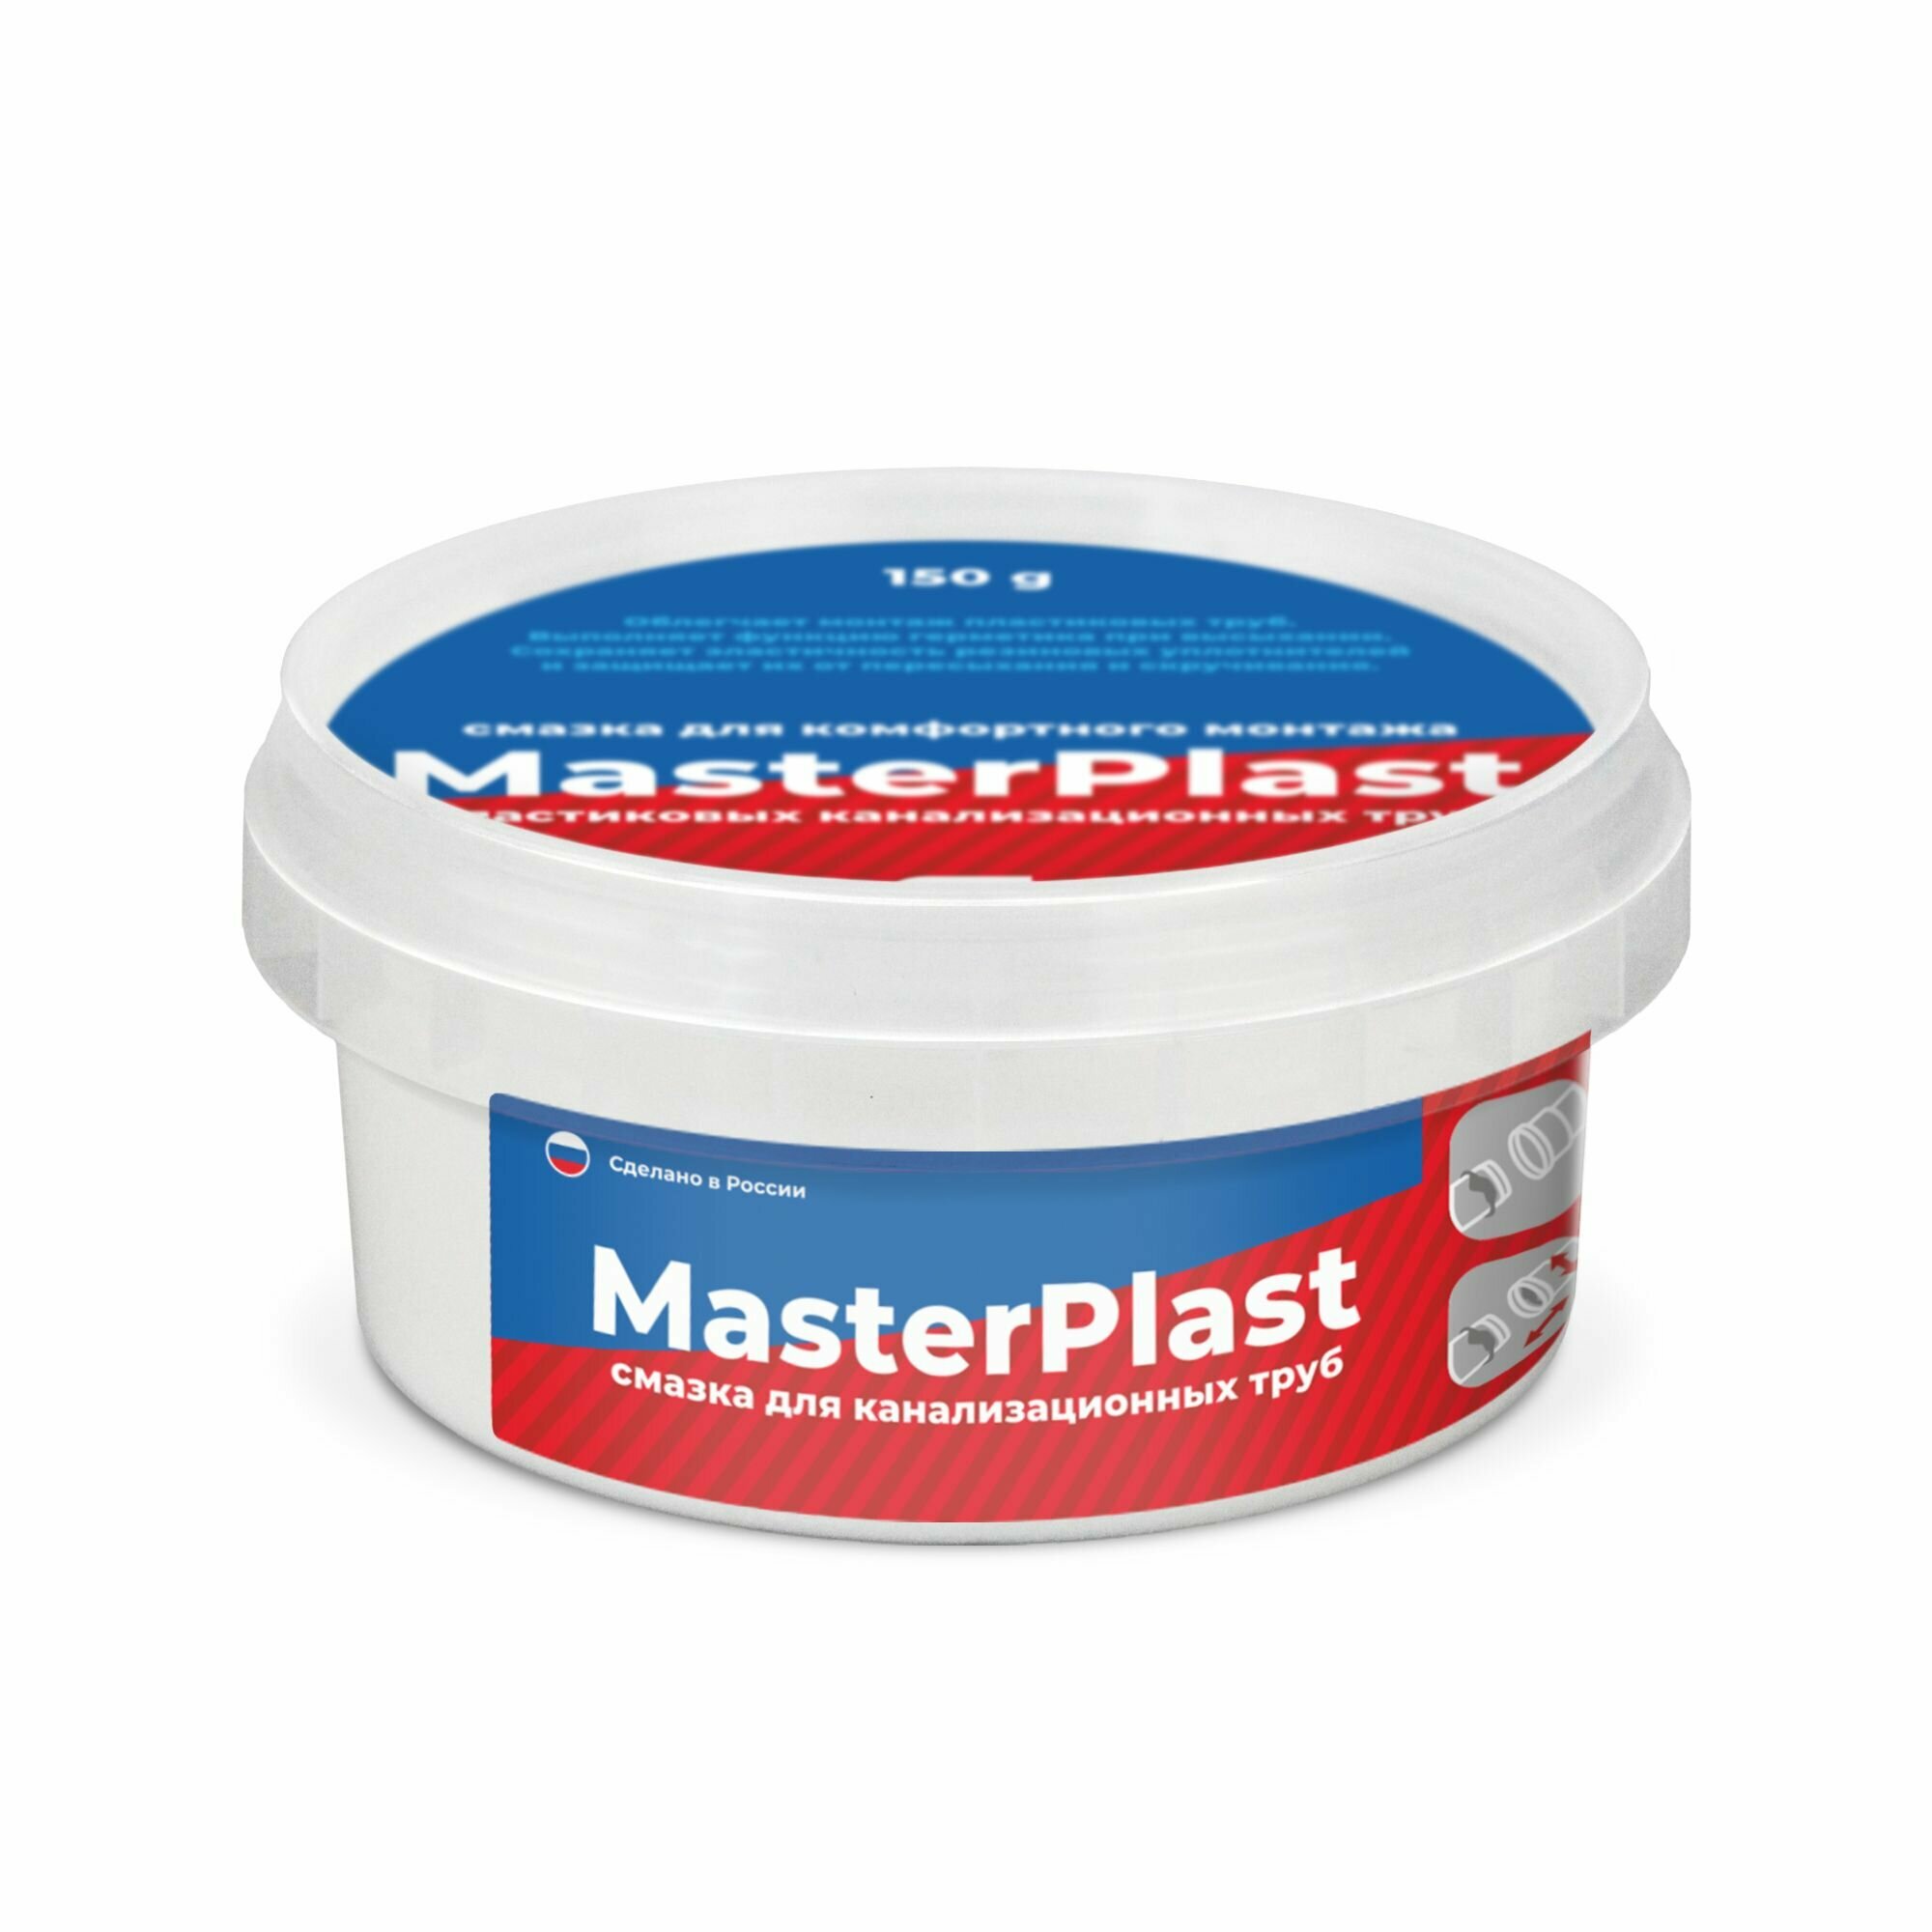 Смазка универсальная силиконовая MasterPlast для монтажа пластиковых и канализационных труб, 150 гр.